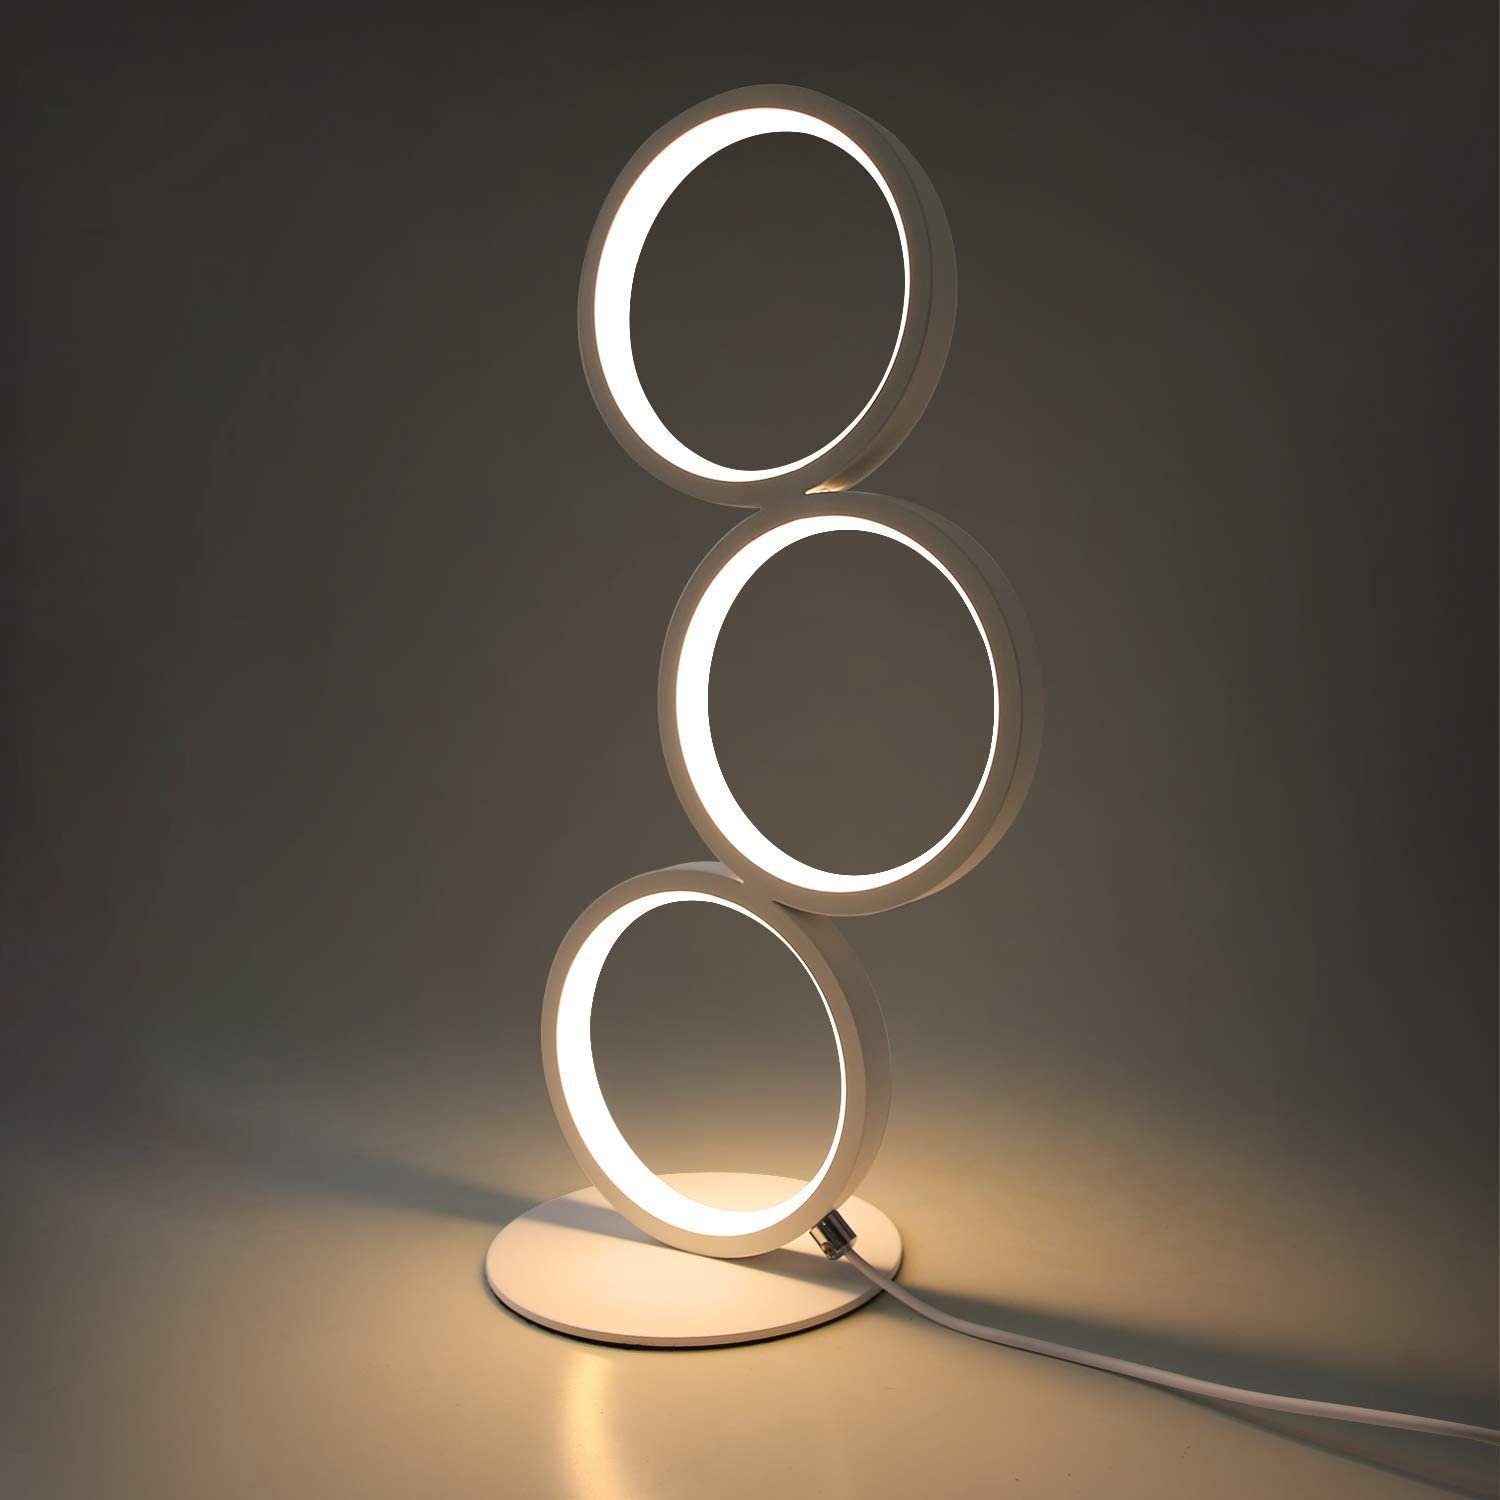 ZMH LED Tischleuchte Modern Nachttischlampe Ring Aluminium Deko Nachtlampe, Dimmbar, LED fest integriert, warmweiß-kaltweiß, Weiß 1x weiß